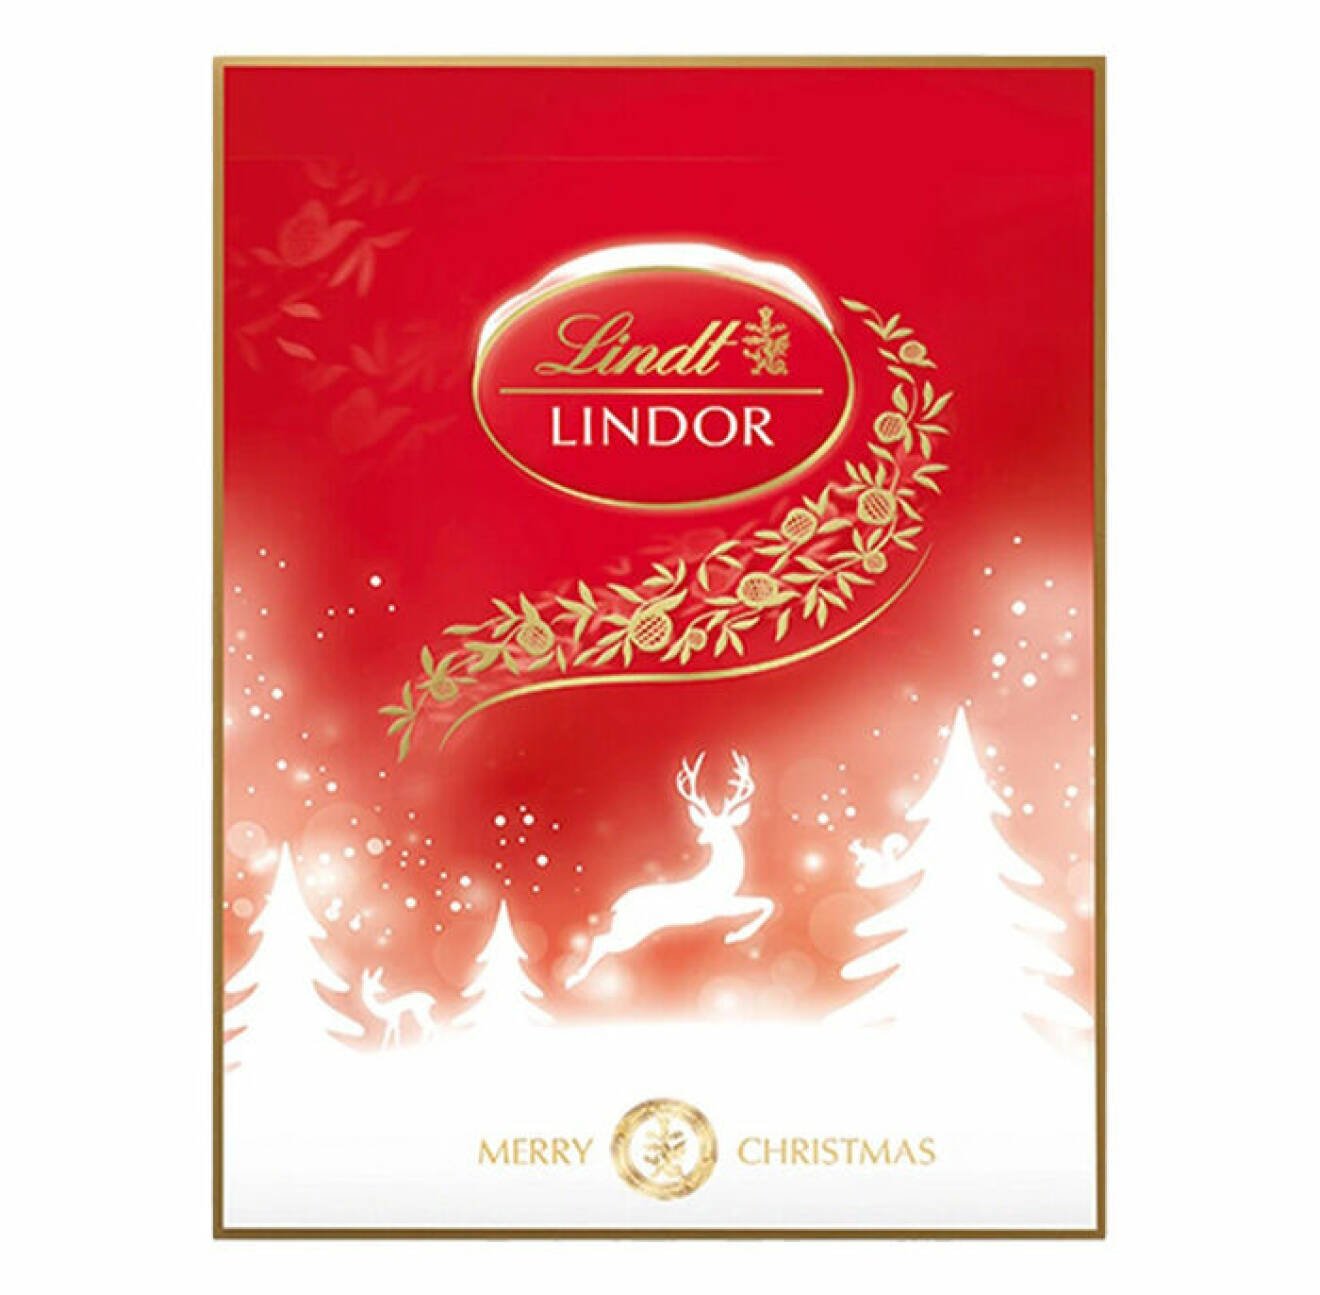 adventskalender med choklad som innehåller 24 stycken luckor från Lindt